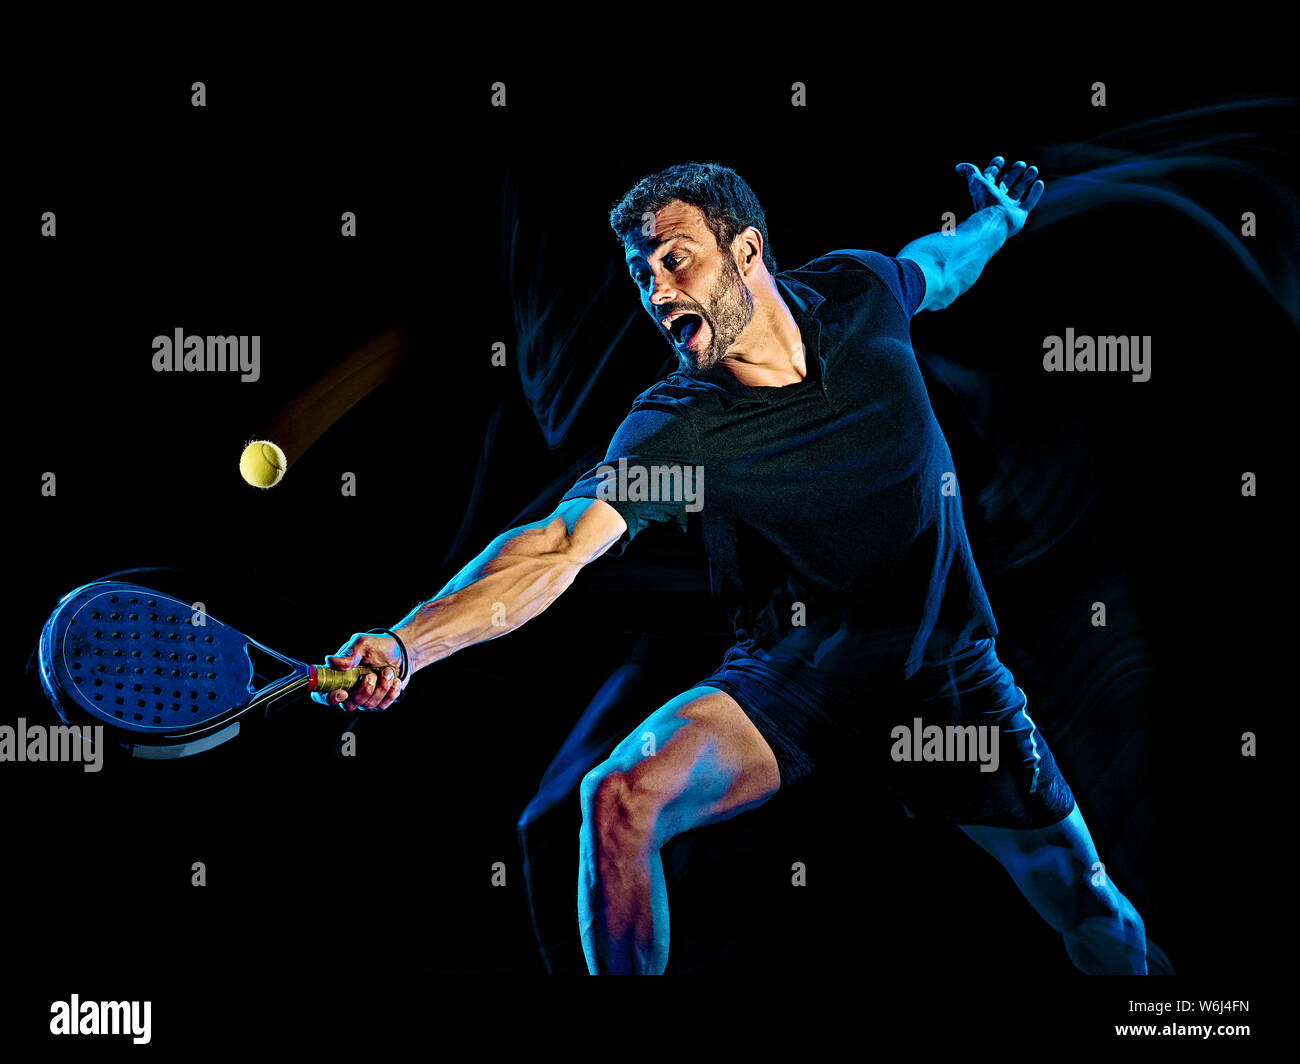 Un jugador de tenis paddle caucásica hombre Foto de estudio aislado sobre fondo negro con luz efecto desenfoque de pintura Foto de stock